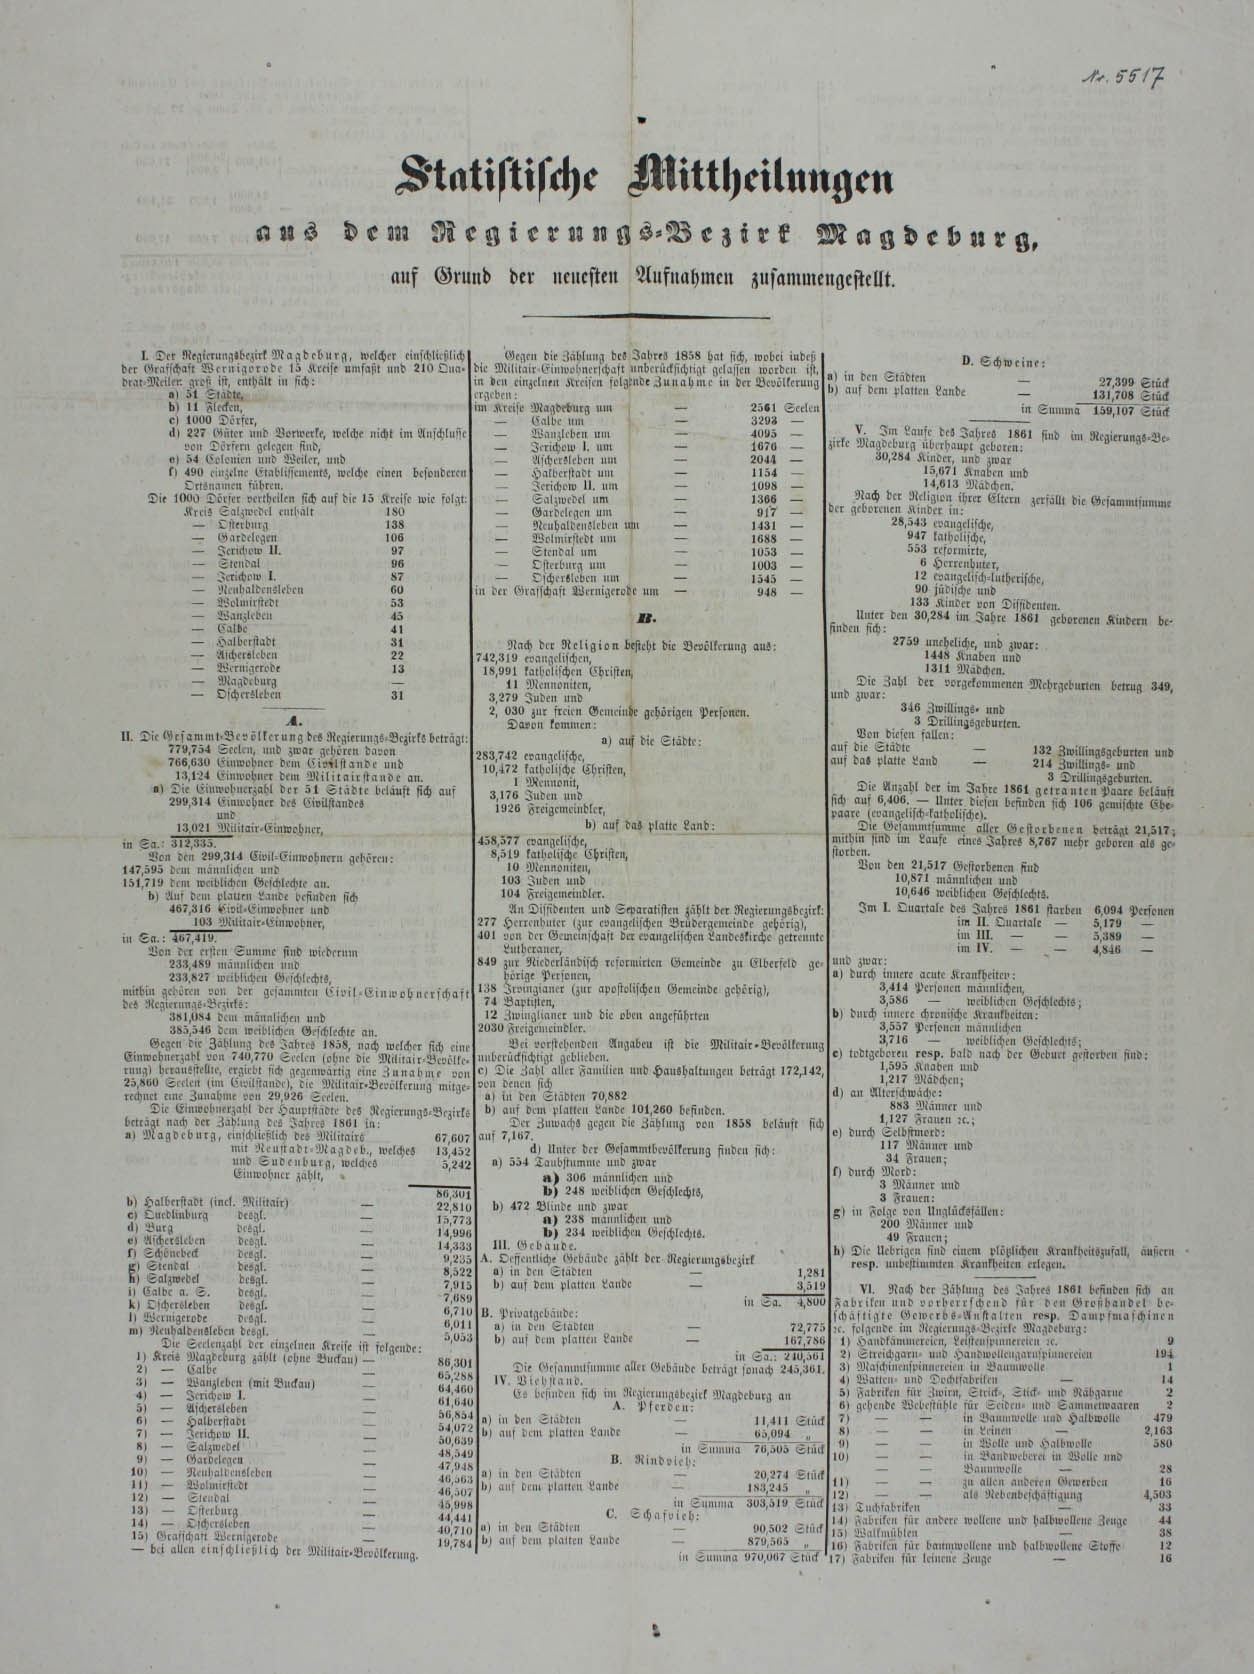 Statistische Mitteilung aus dem Regierungsbezirk Magdeburg, 1862 (Museum Wolmirstedt RR-F)